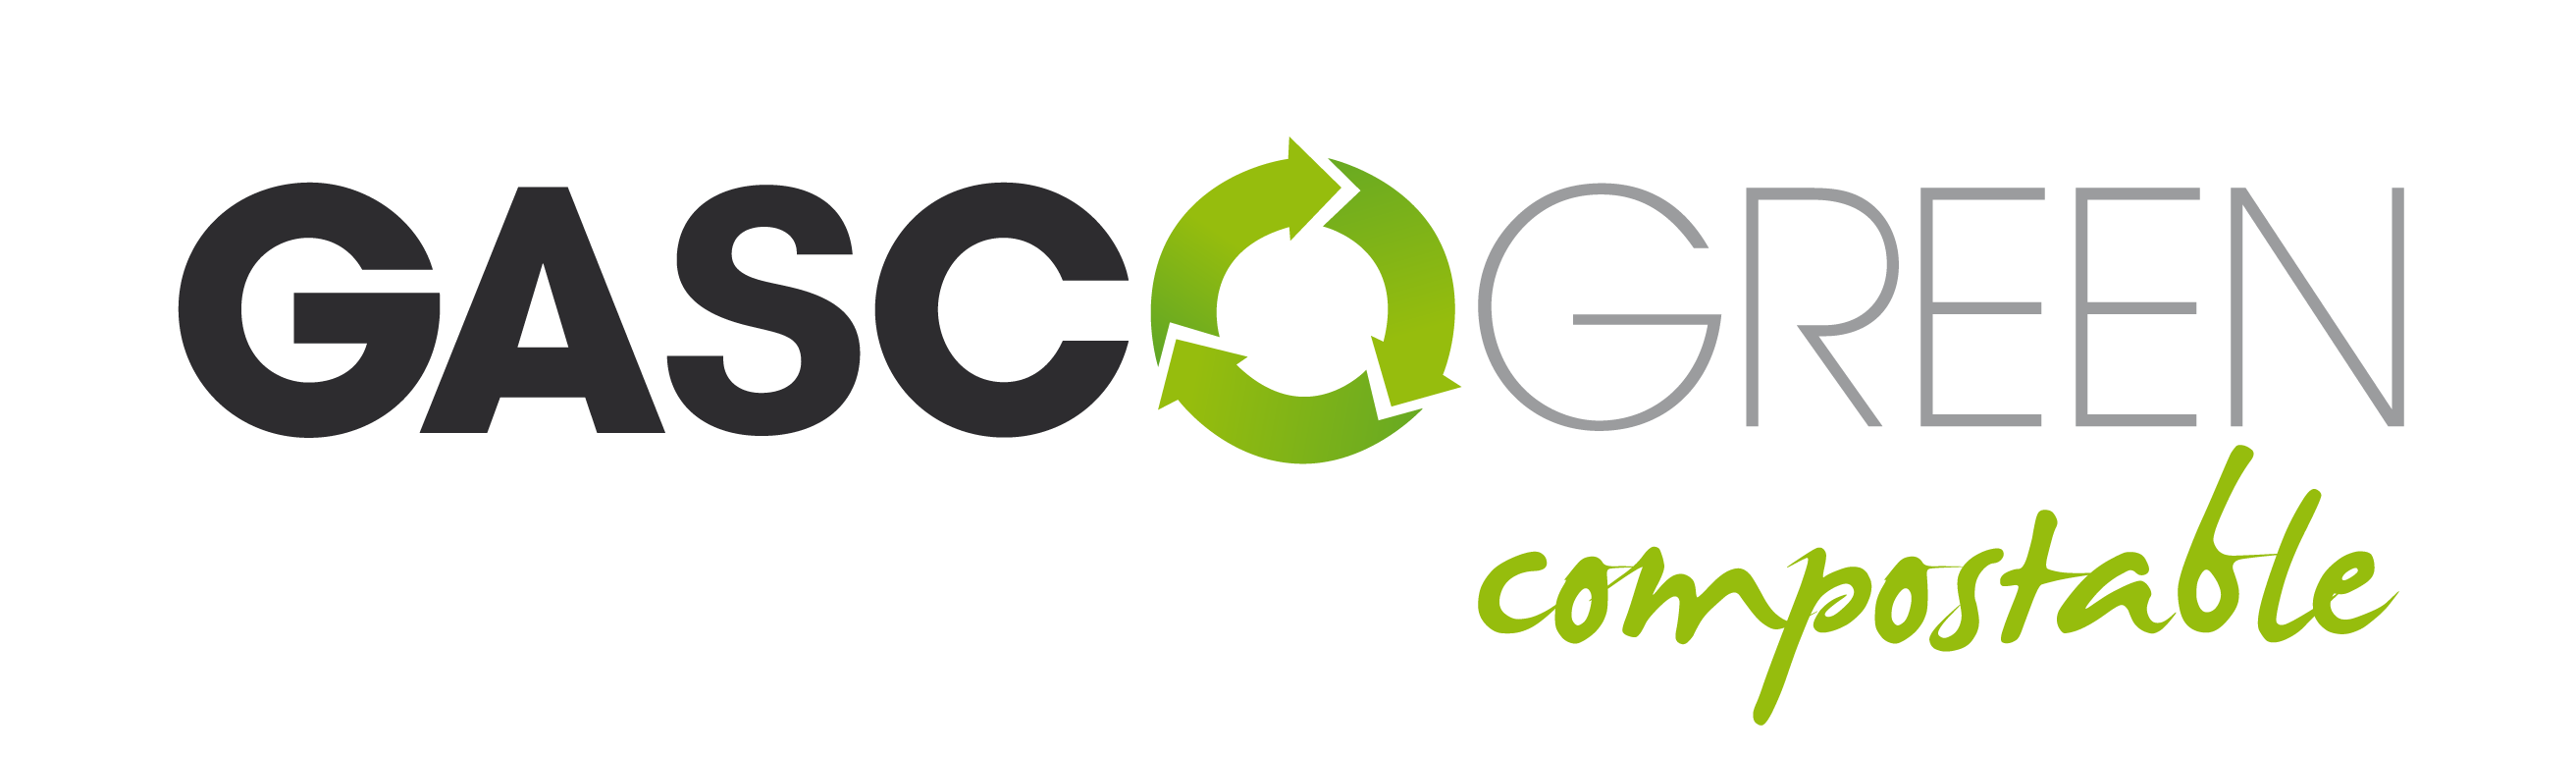 GASCOGNE-GASCOGREEN compostable